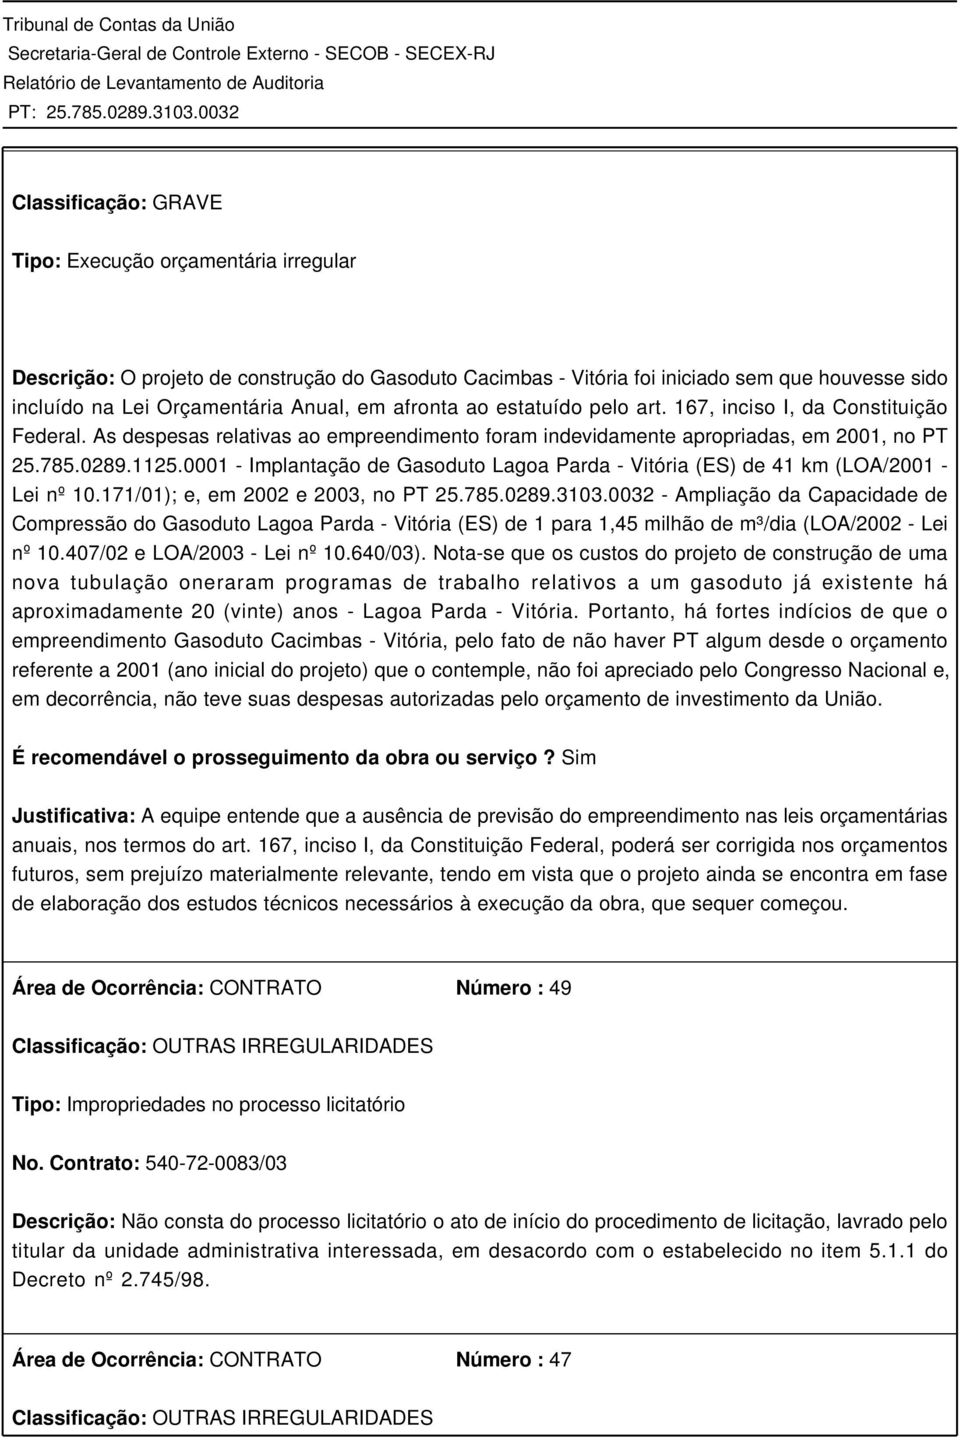 0001 - Implantação de Gasoduto Lagoa Parda - Vitória (ES) de 41 km (LOA/2001 - Lei nº 10.171/01); e, em 2002 e 2003, no PT 25.785.0289.3103.